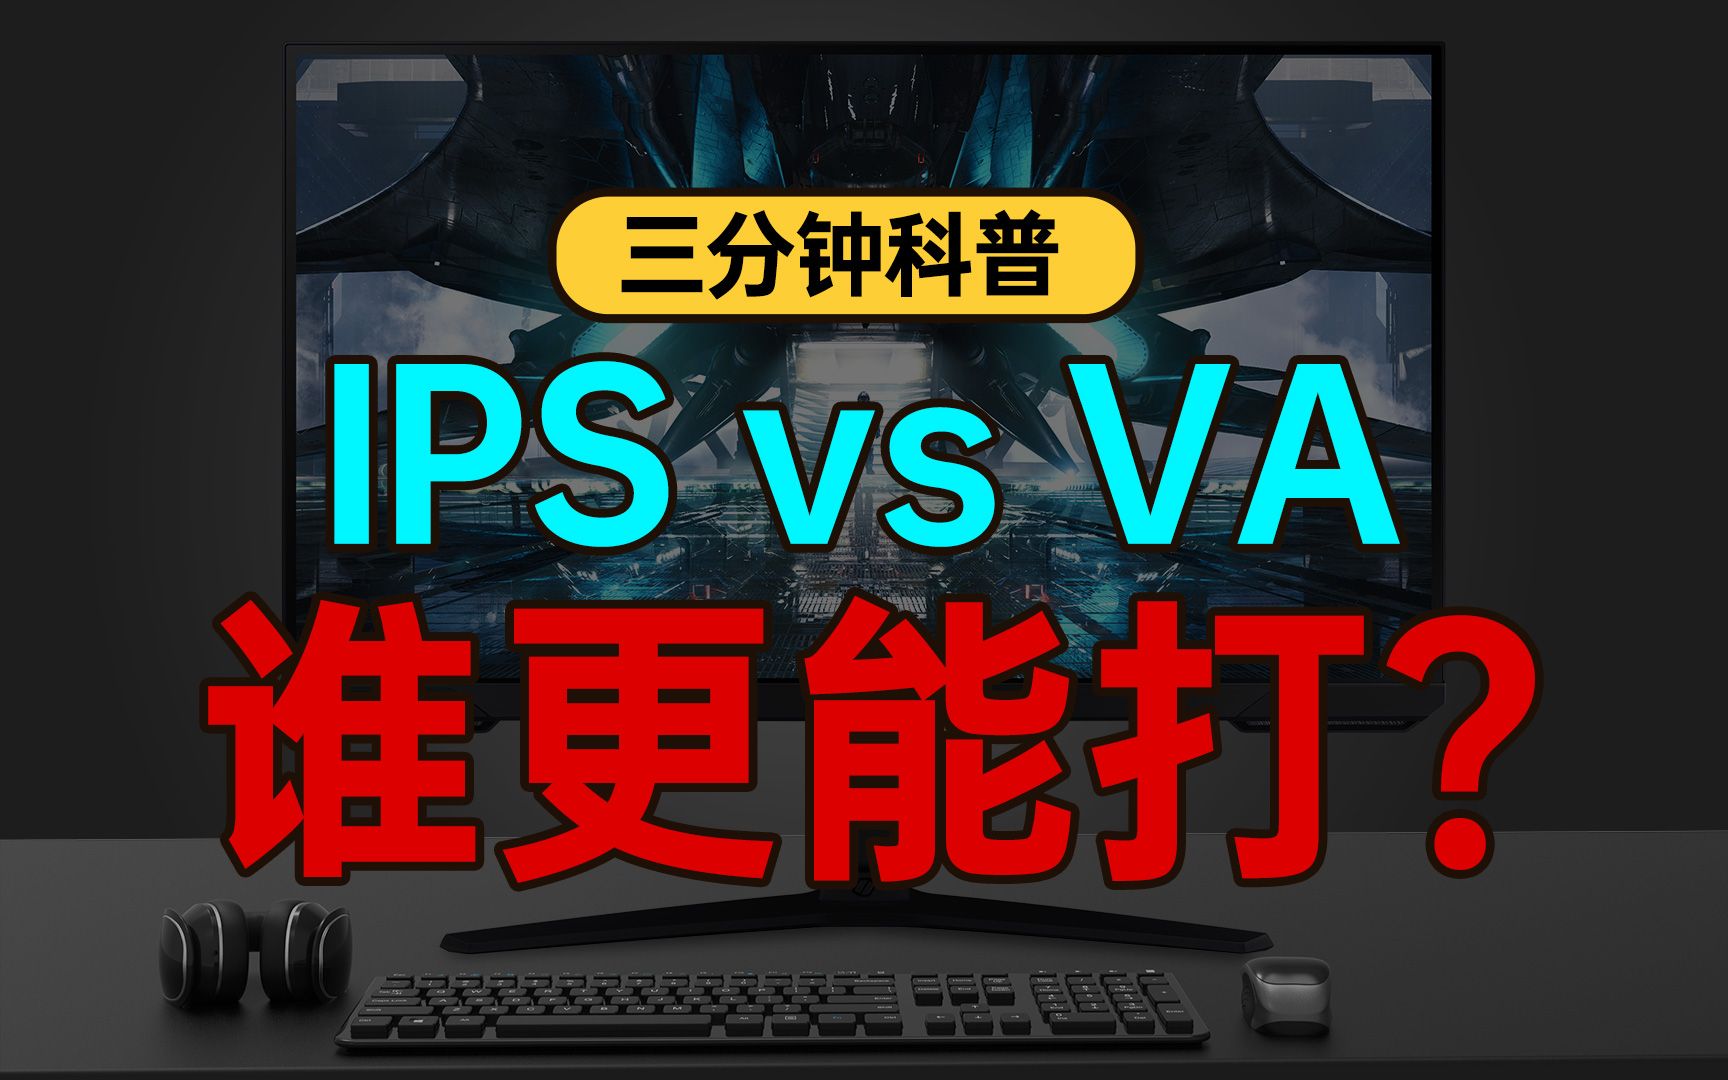 【显示器三分钟科普】IPS面板与VA面板究竟如何选择？显示器对比度对看电影玩游戏影响到底有多大？